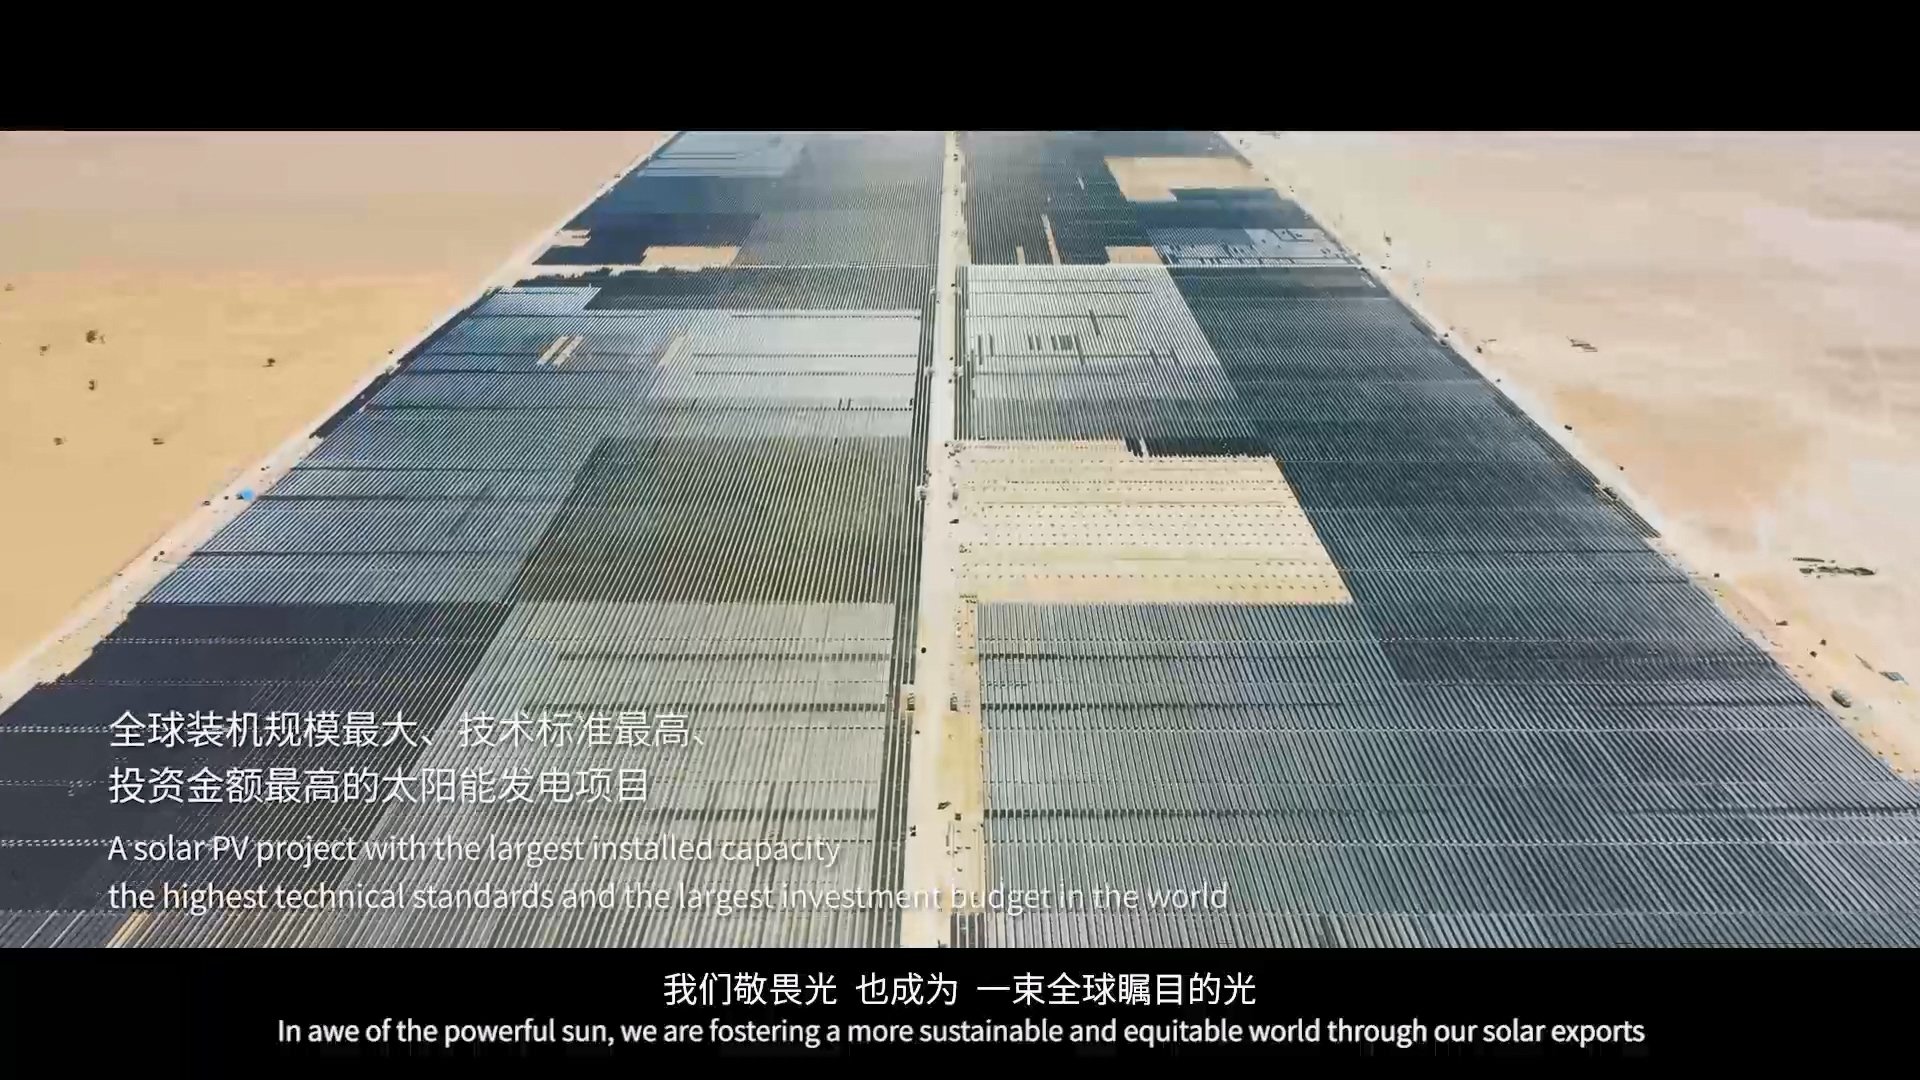 上海电气参与共建“一带一路”十周年